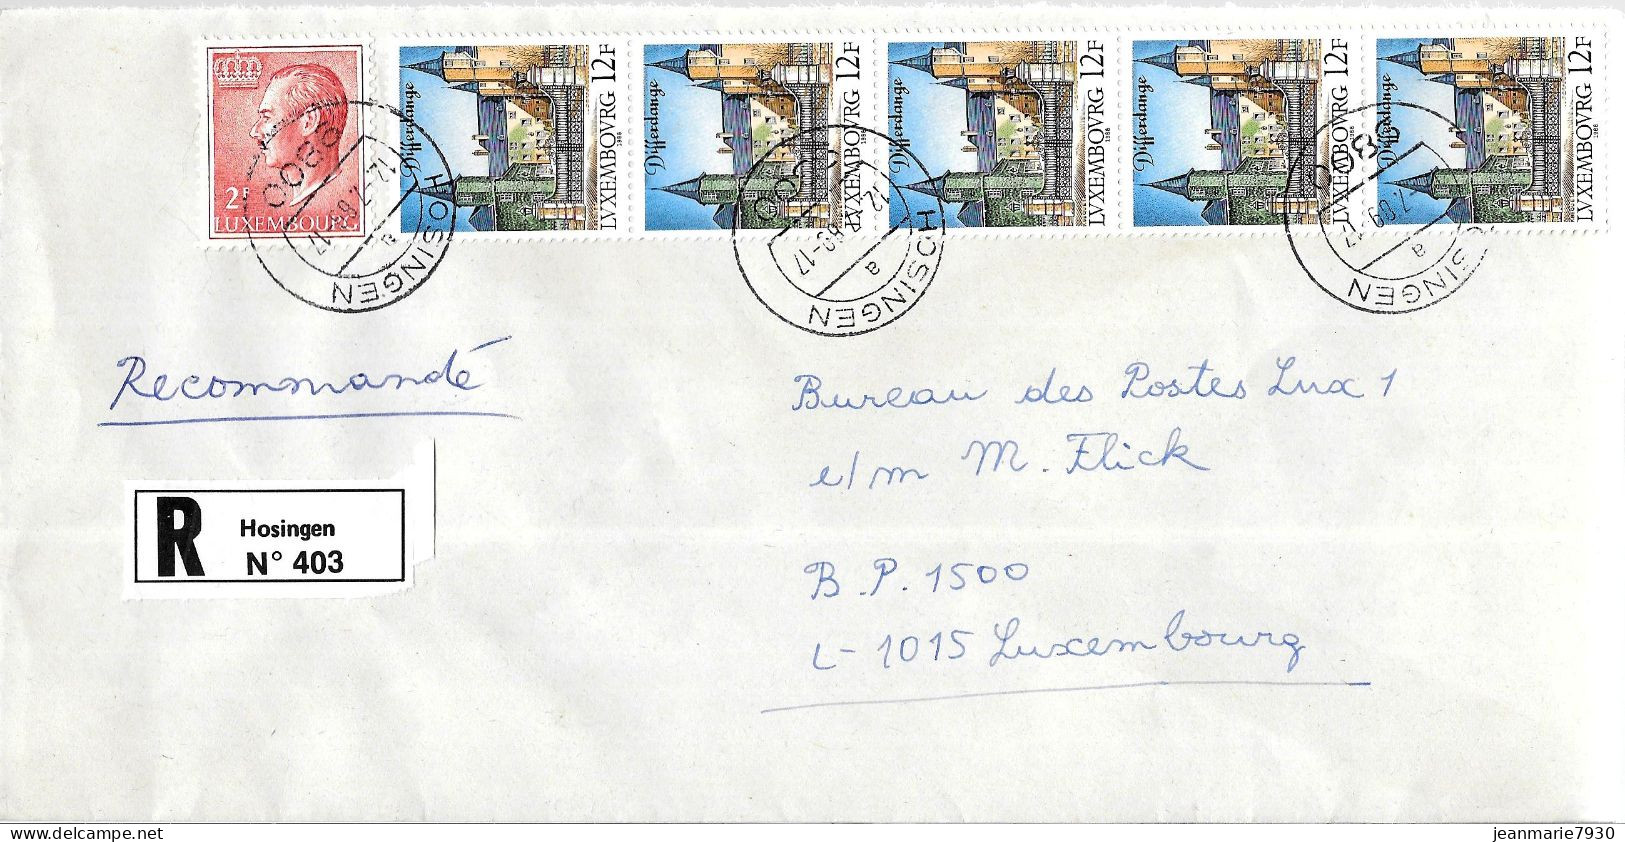 H382 - LETTRE RECOMMANDEE DE HOSINGEN DU 12/07/89 - Lettres & Documents